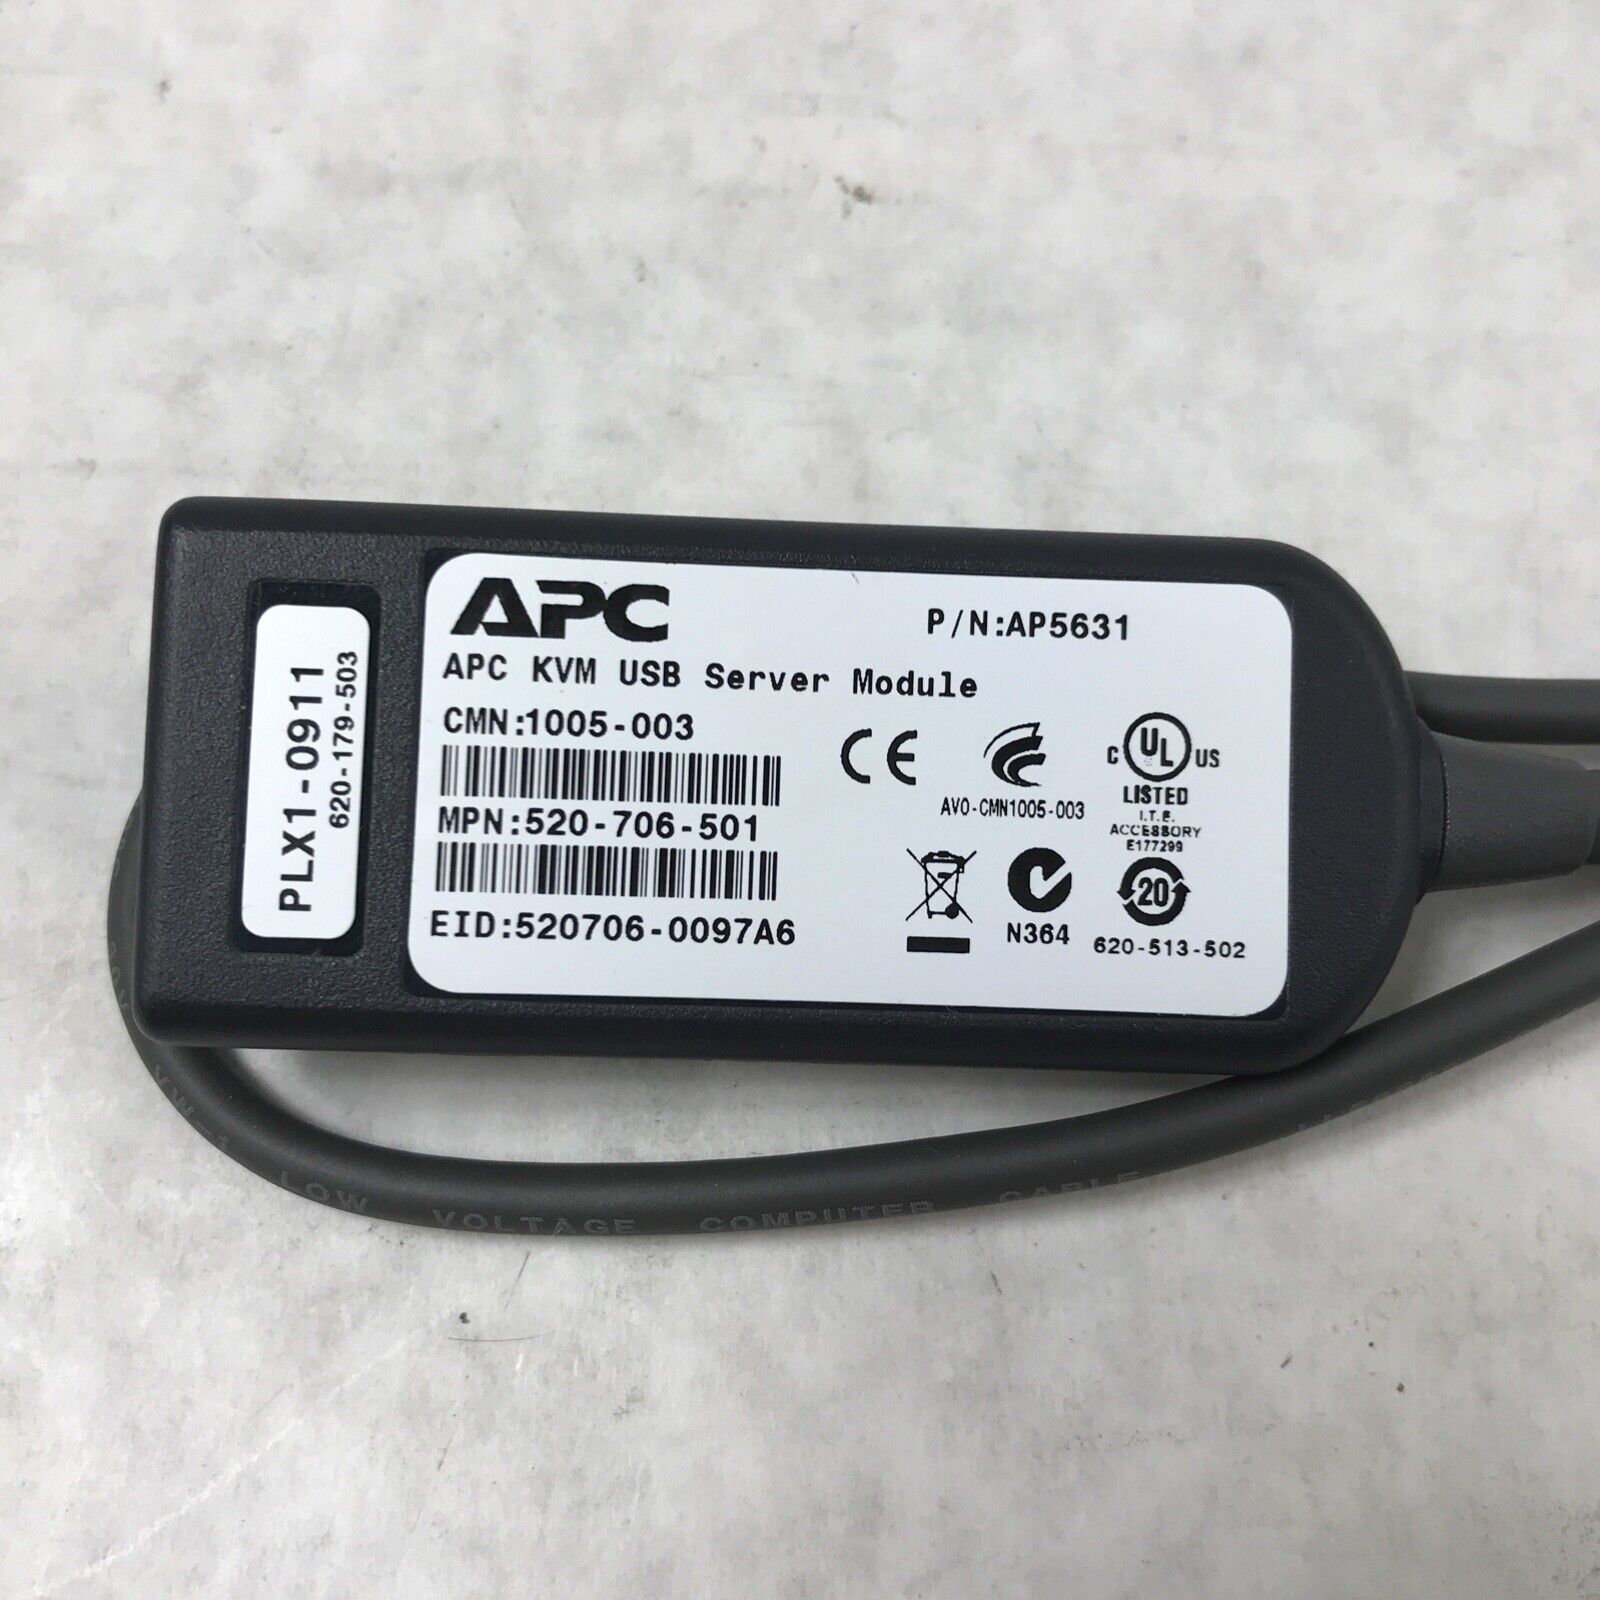 APC AP5631 KVM USB Server Module 520-706-501 PLX1-1909